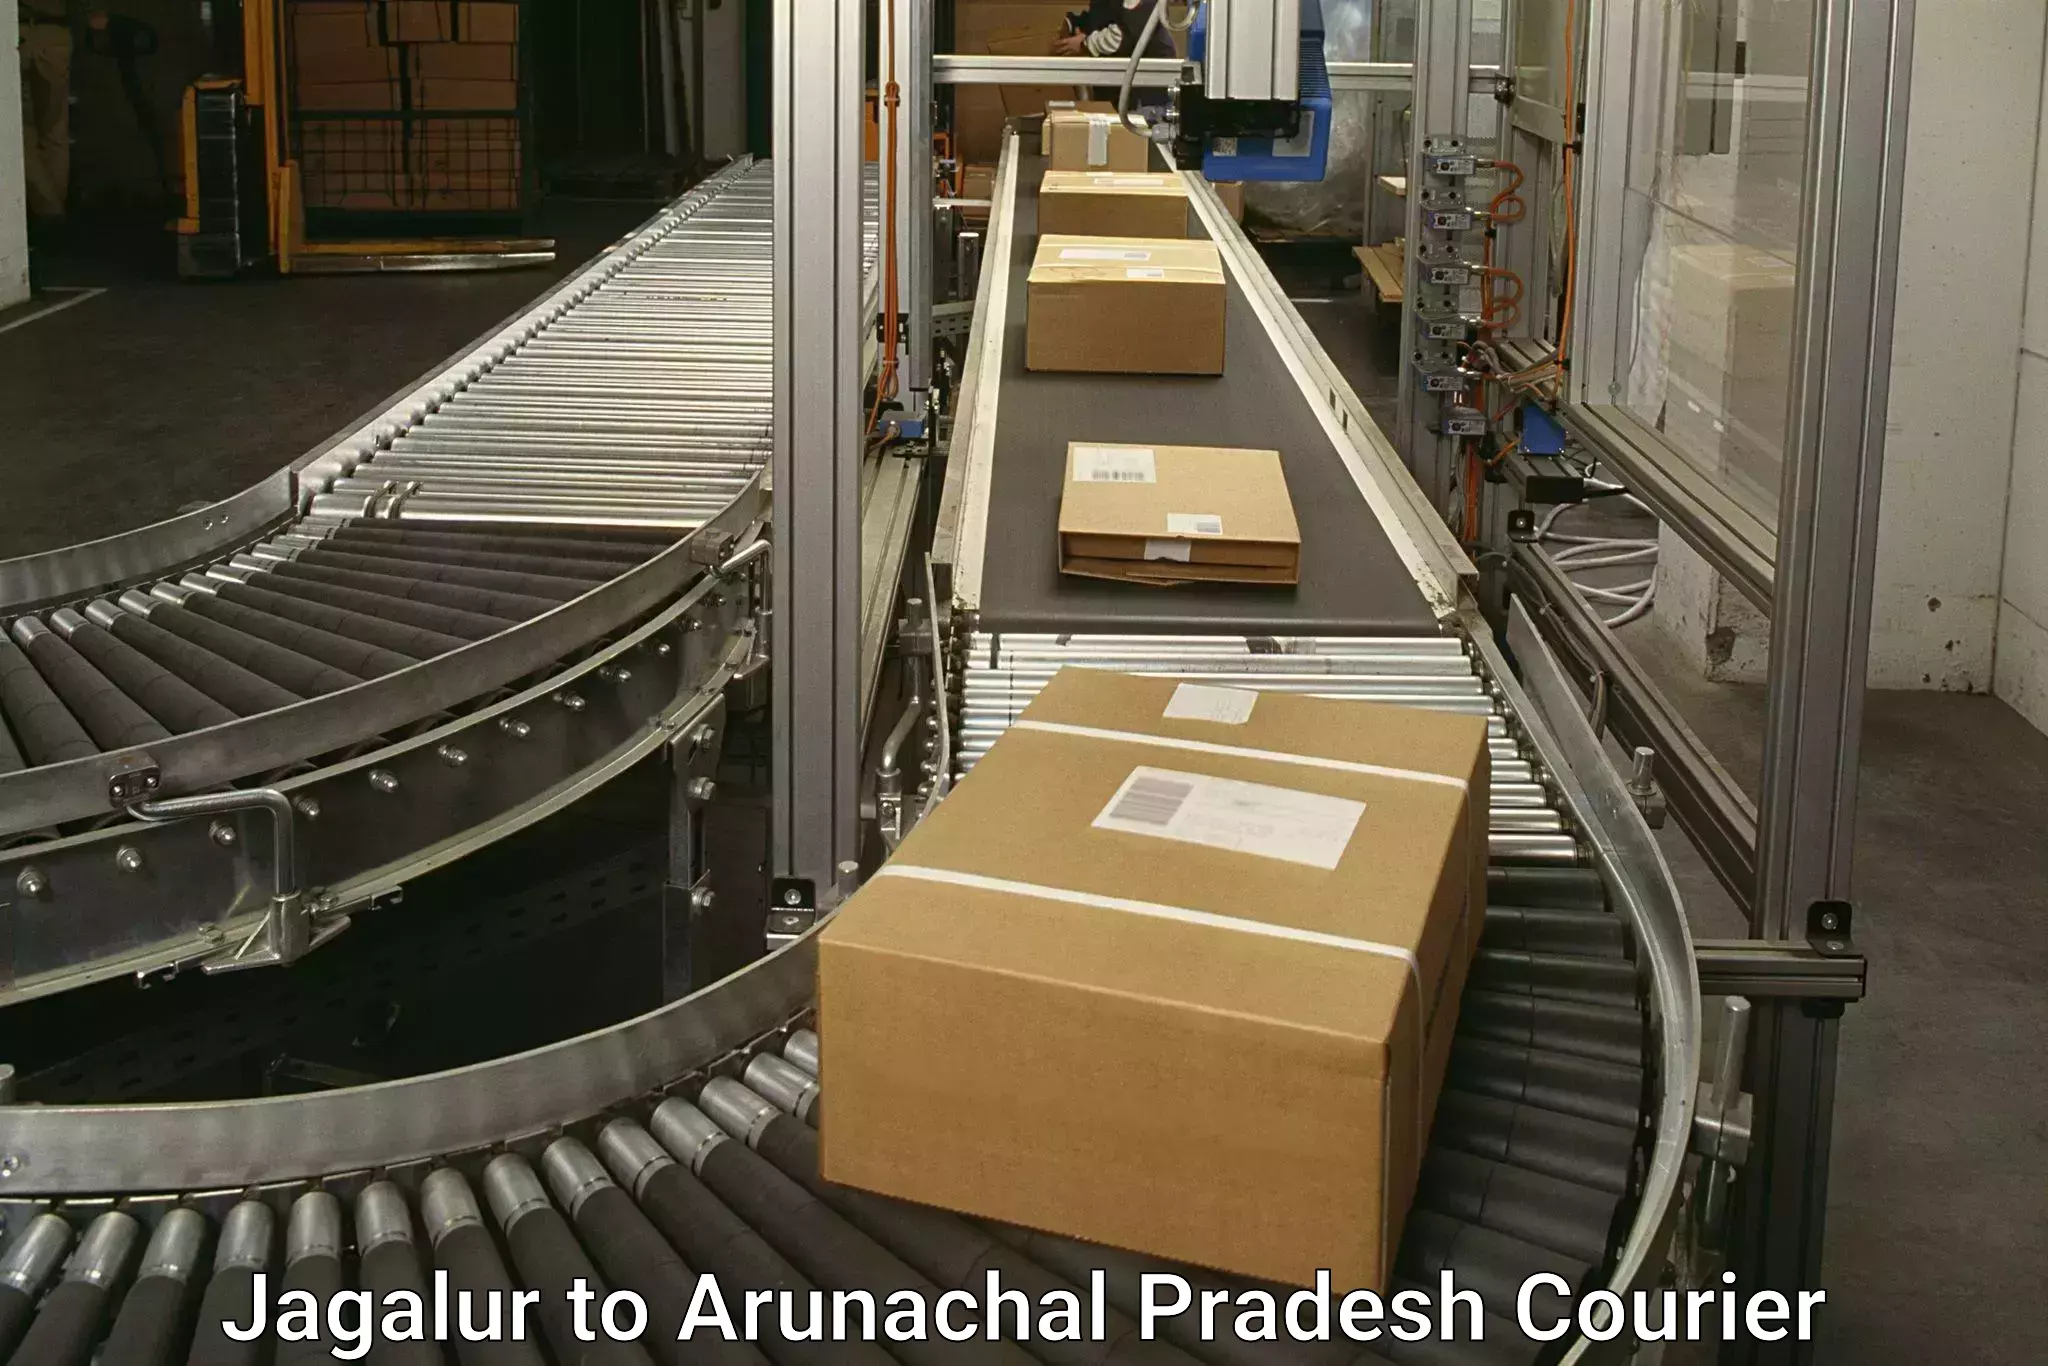 Express courier facilities Jagalur to Itanagar